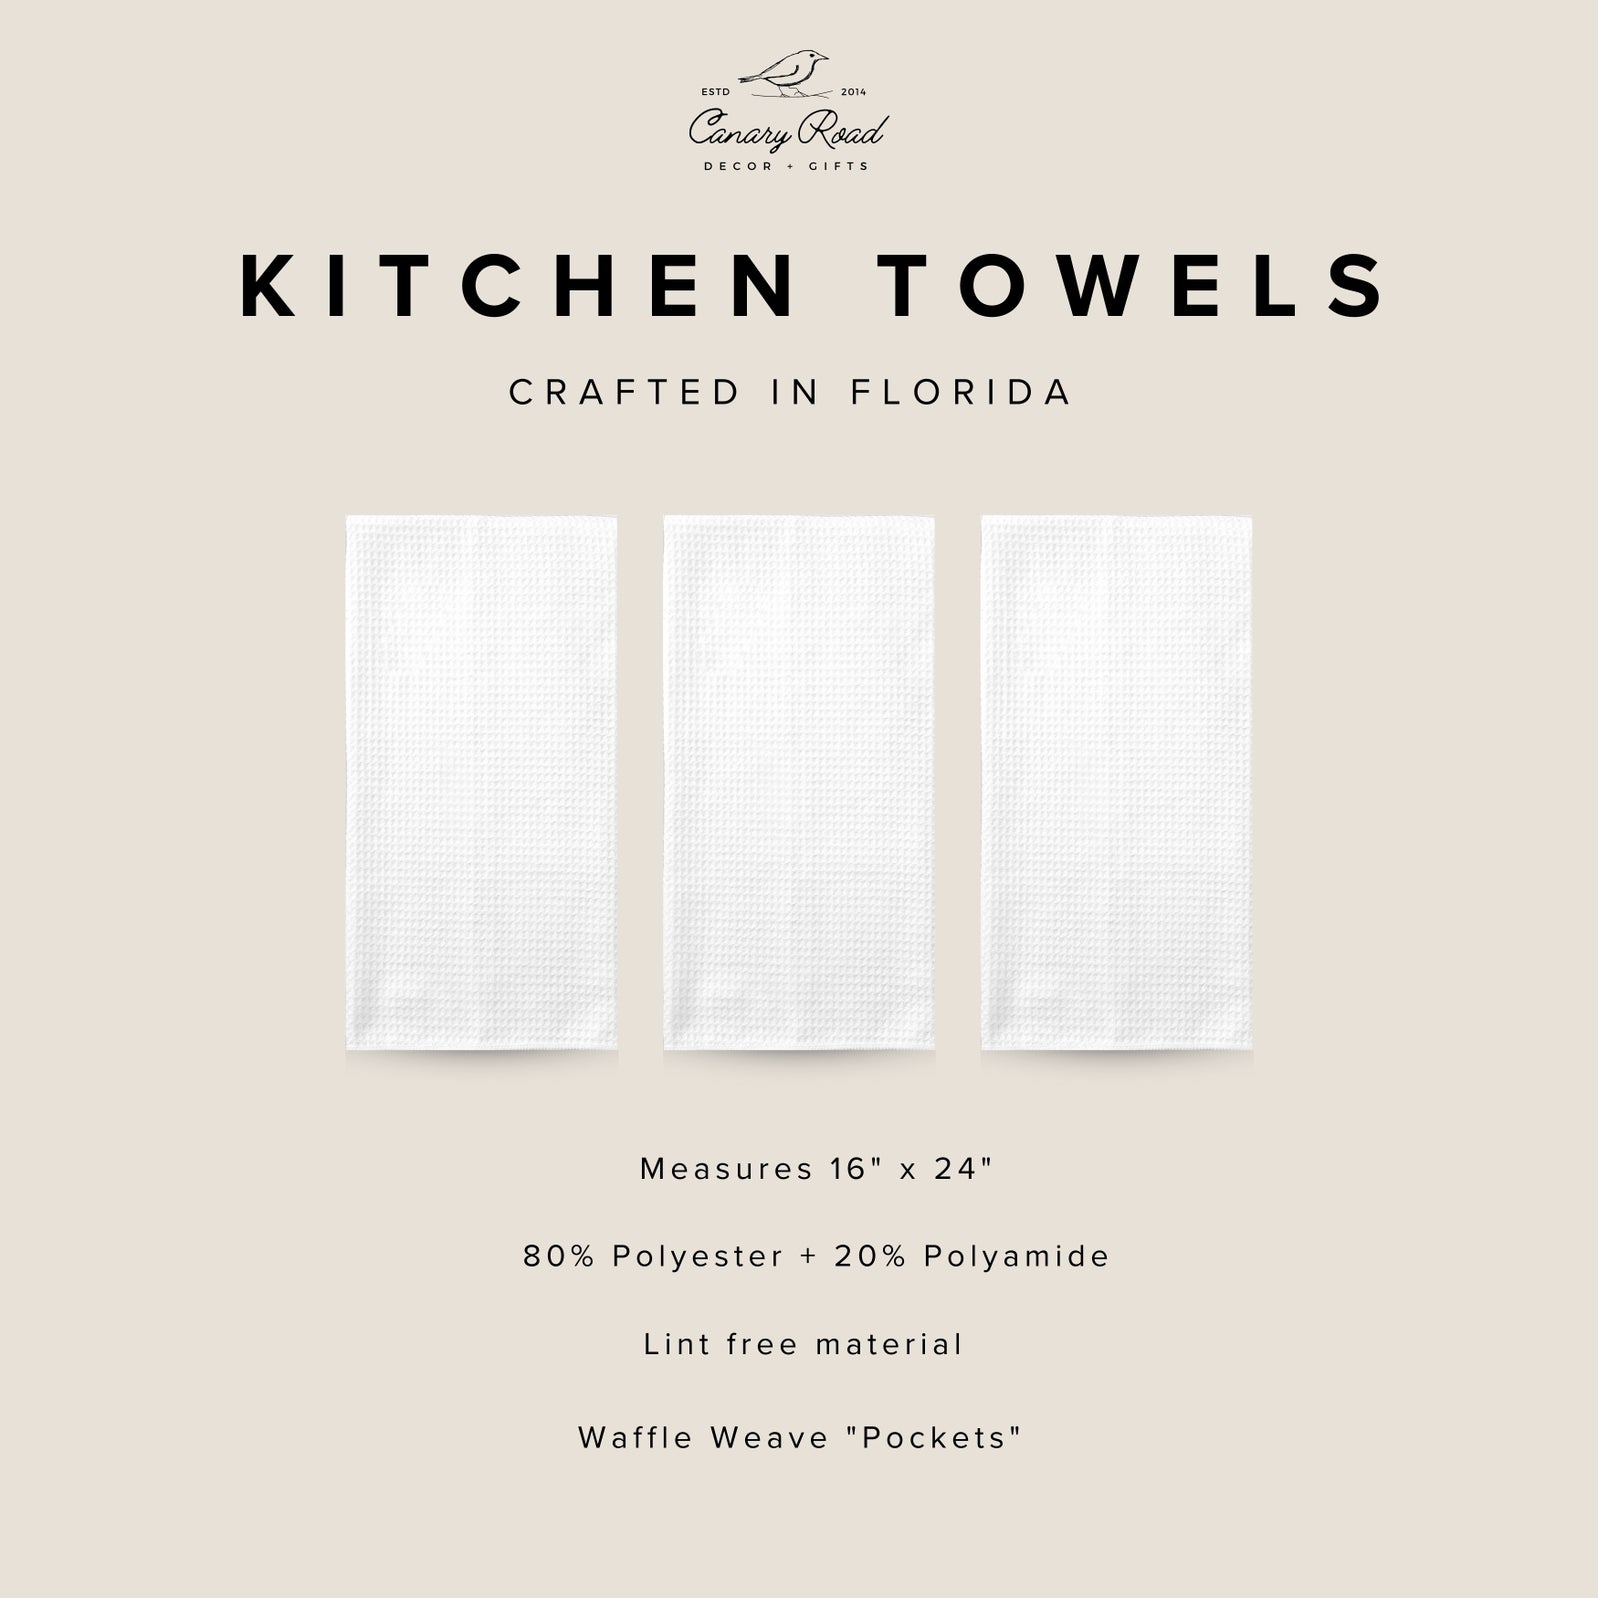 Best Mimi Ever Kitchen Towel